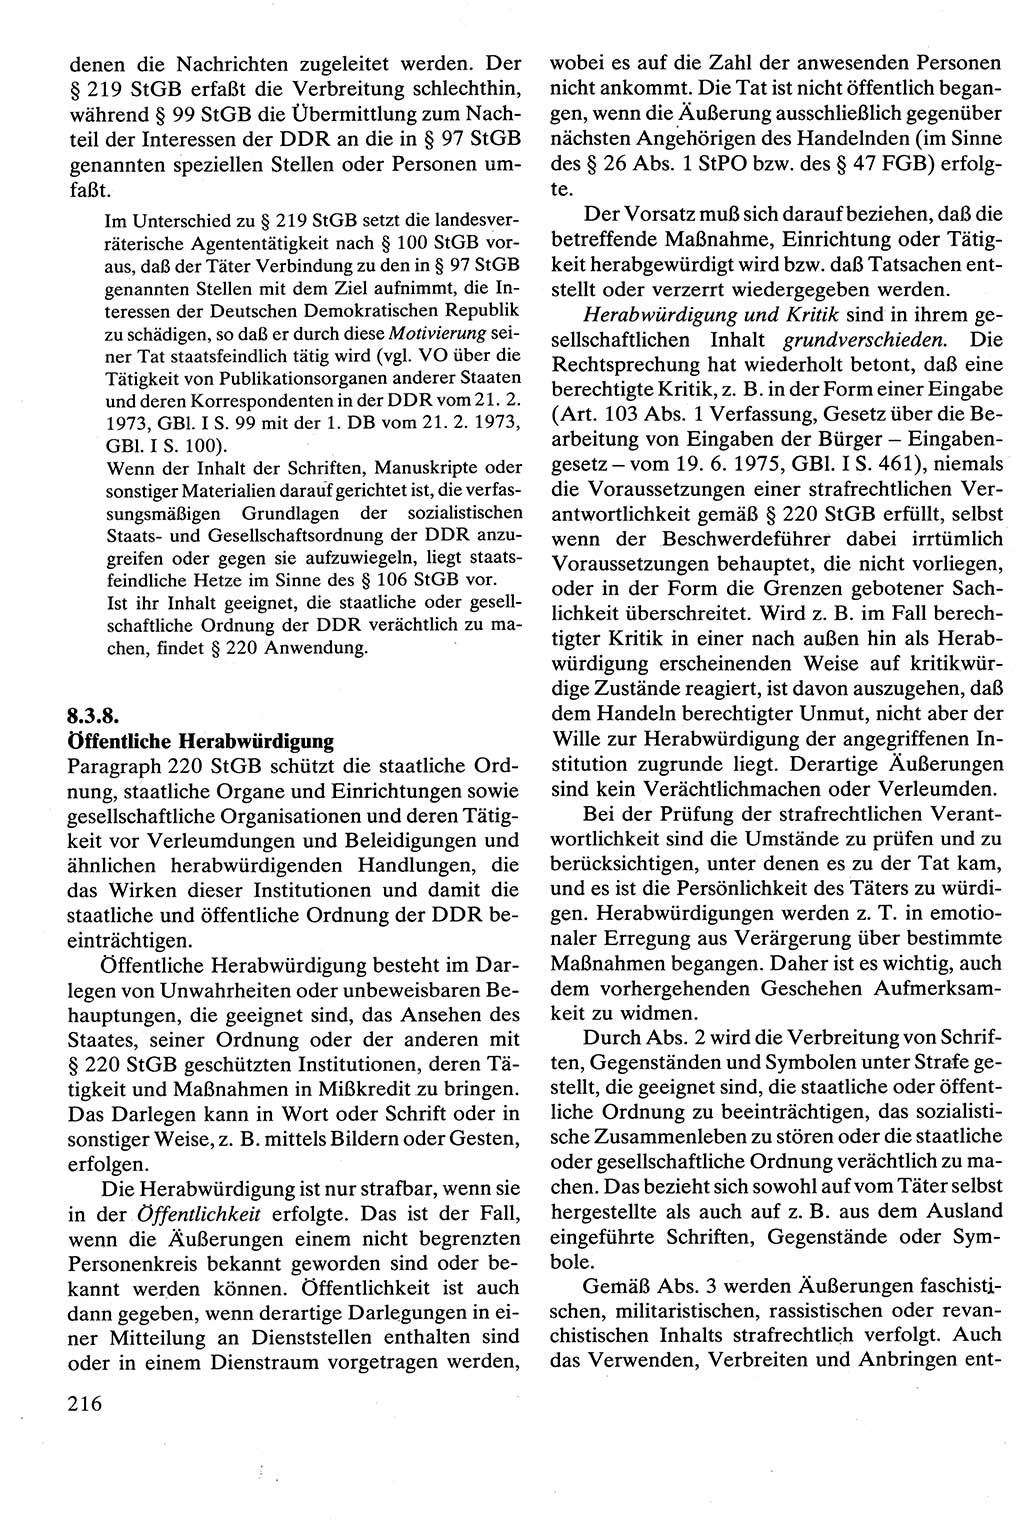 Strafrecht [Deutsche Demokratische Republik (DDR)], Besonderer Teil, Lehrbuch 1981, Seite 216 (Strafr. DDR BT Lb. 1981, S. 216)